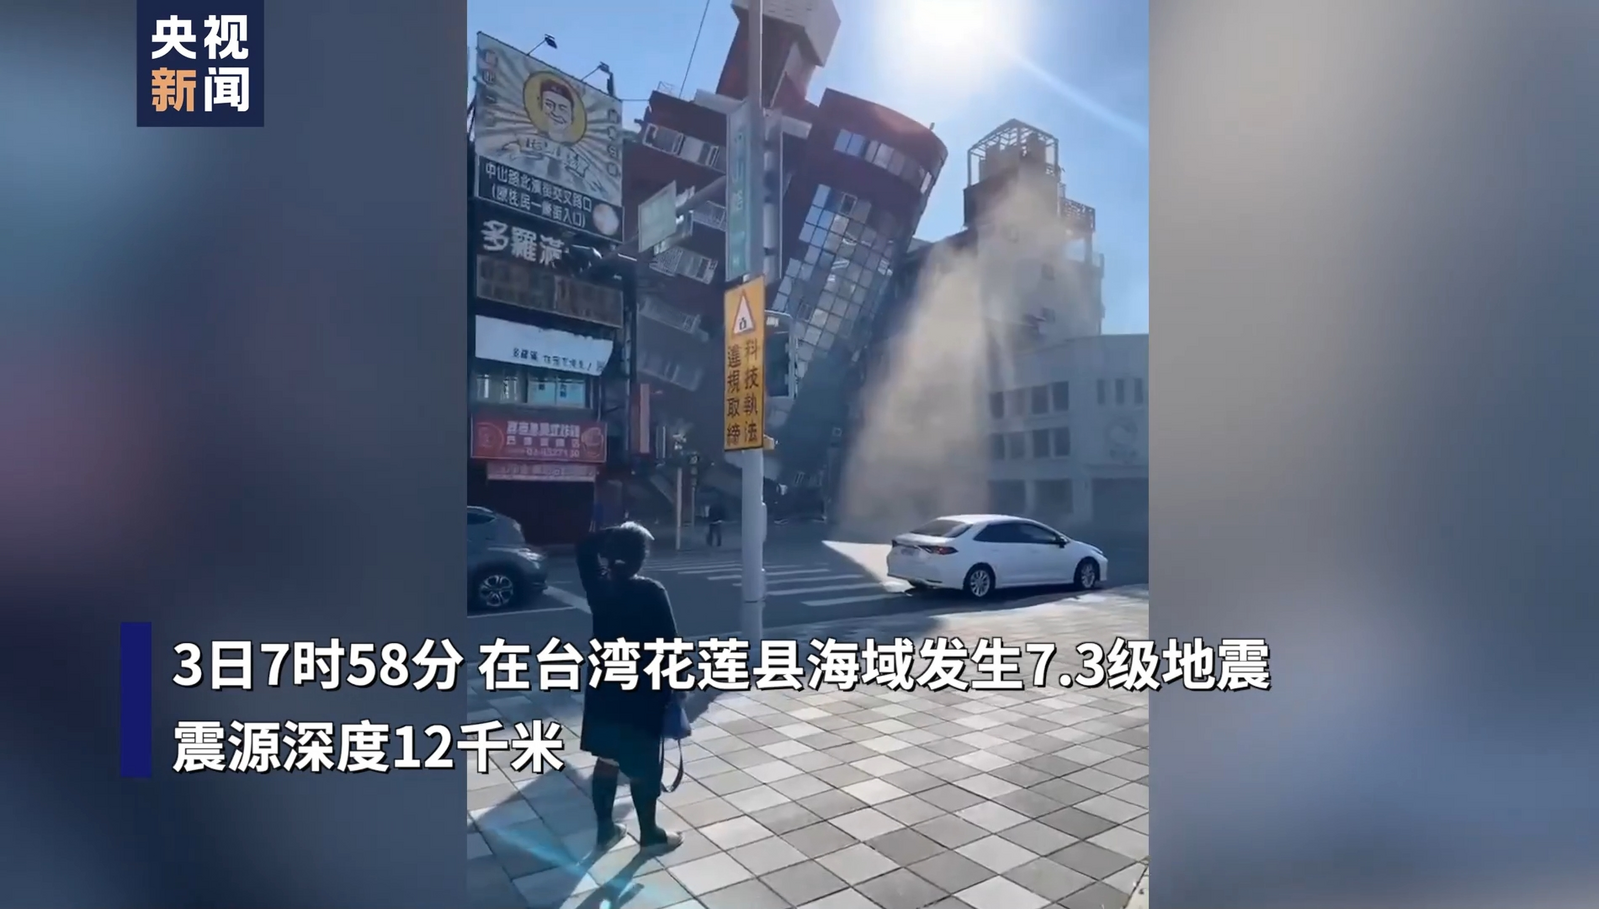 台湾花莲县海域7.3级地震已致7死711伤 海啸警报解除